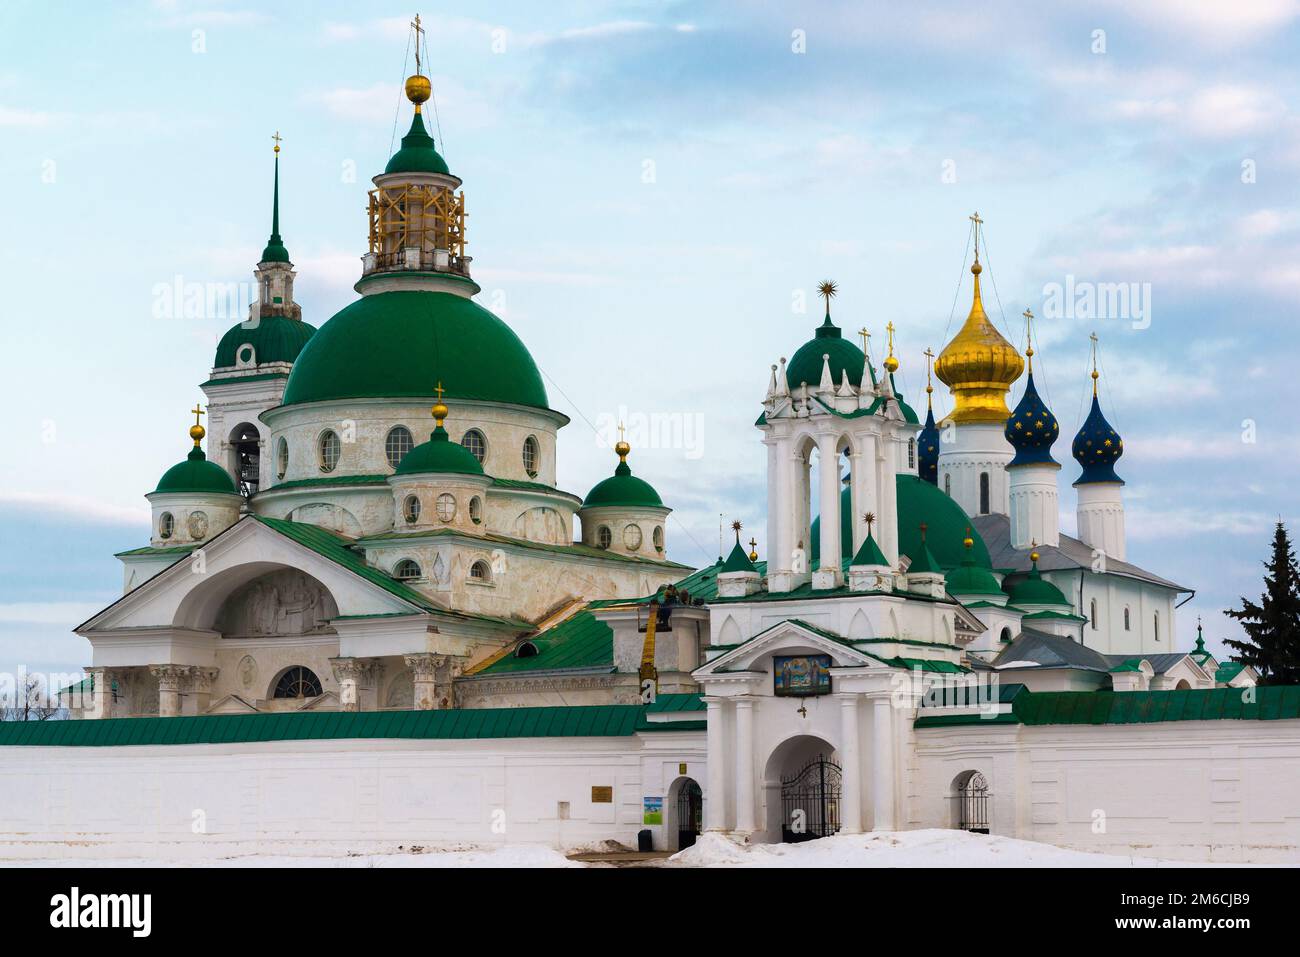 Spaso-Yakovlevsky Dimitriev Monastery in Rostov Veliky, Russia Stock Photo